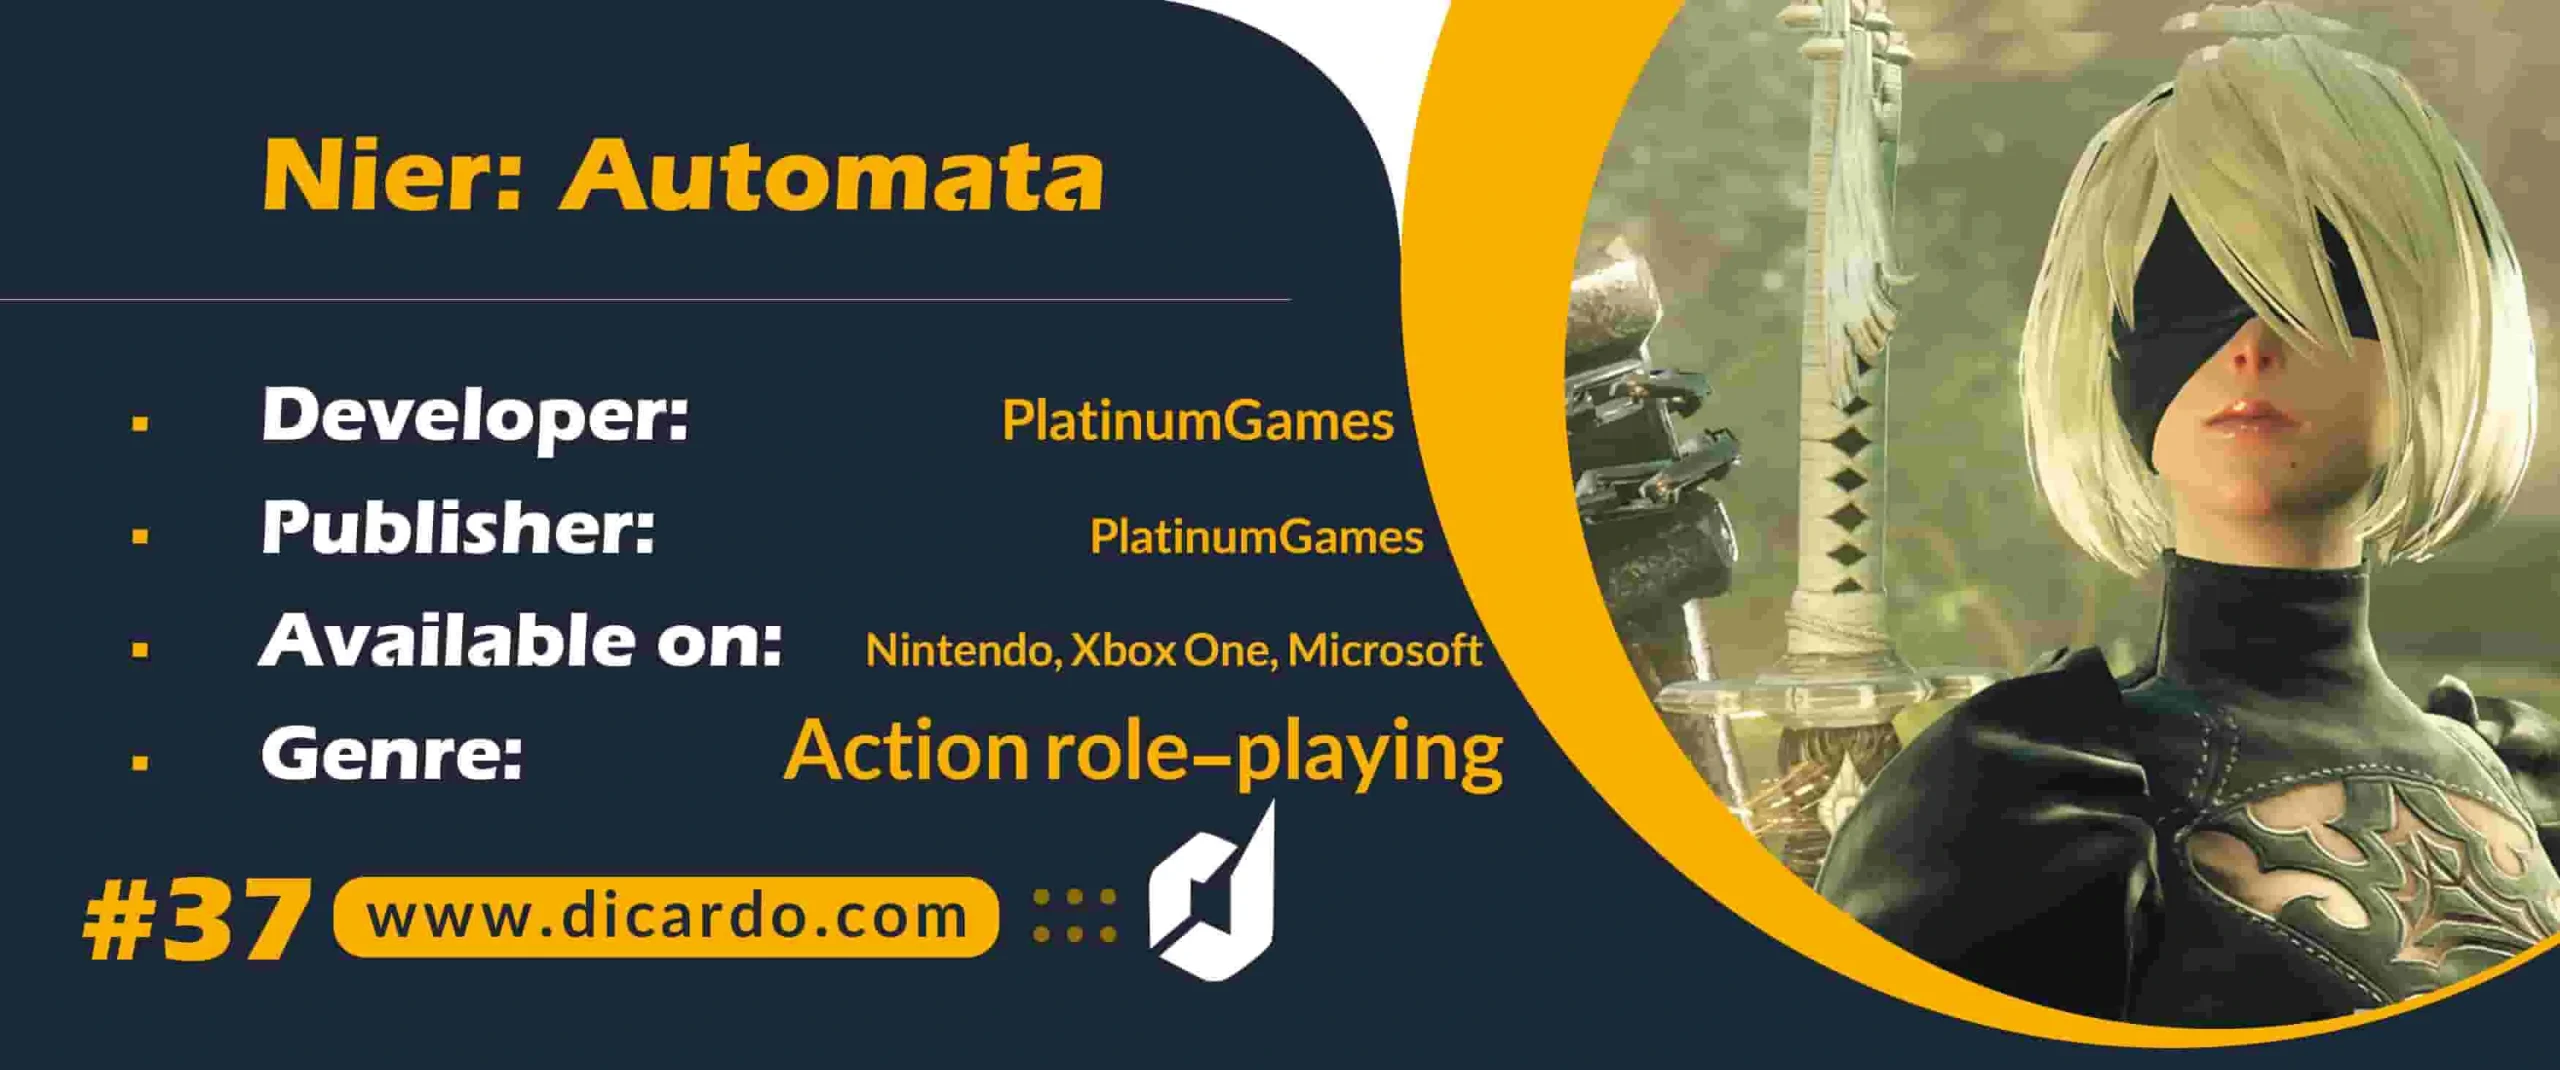 #37 نیر اتوماتا Nier: Automata از بهترین بازیهای کامپیوتری منتشر شده توسط اسکوئر انیکس